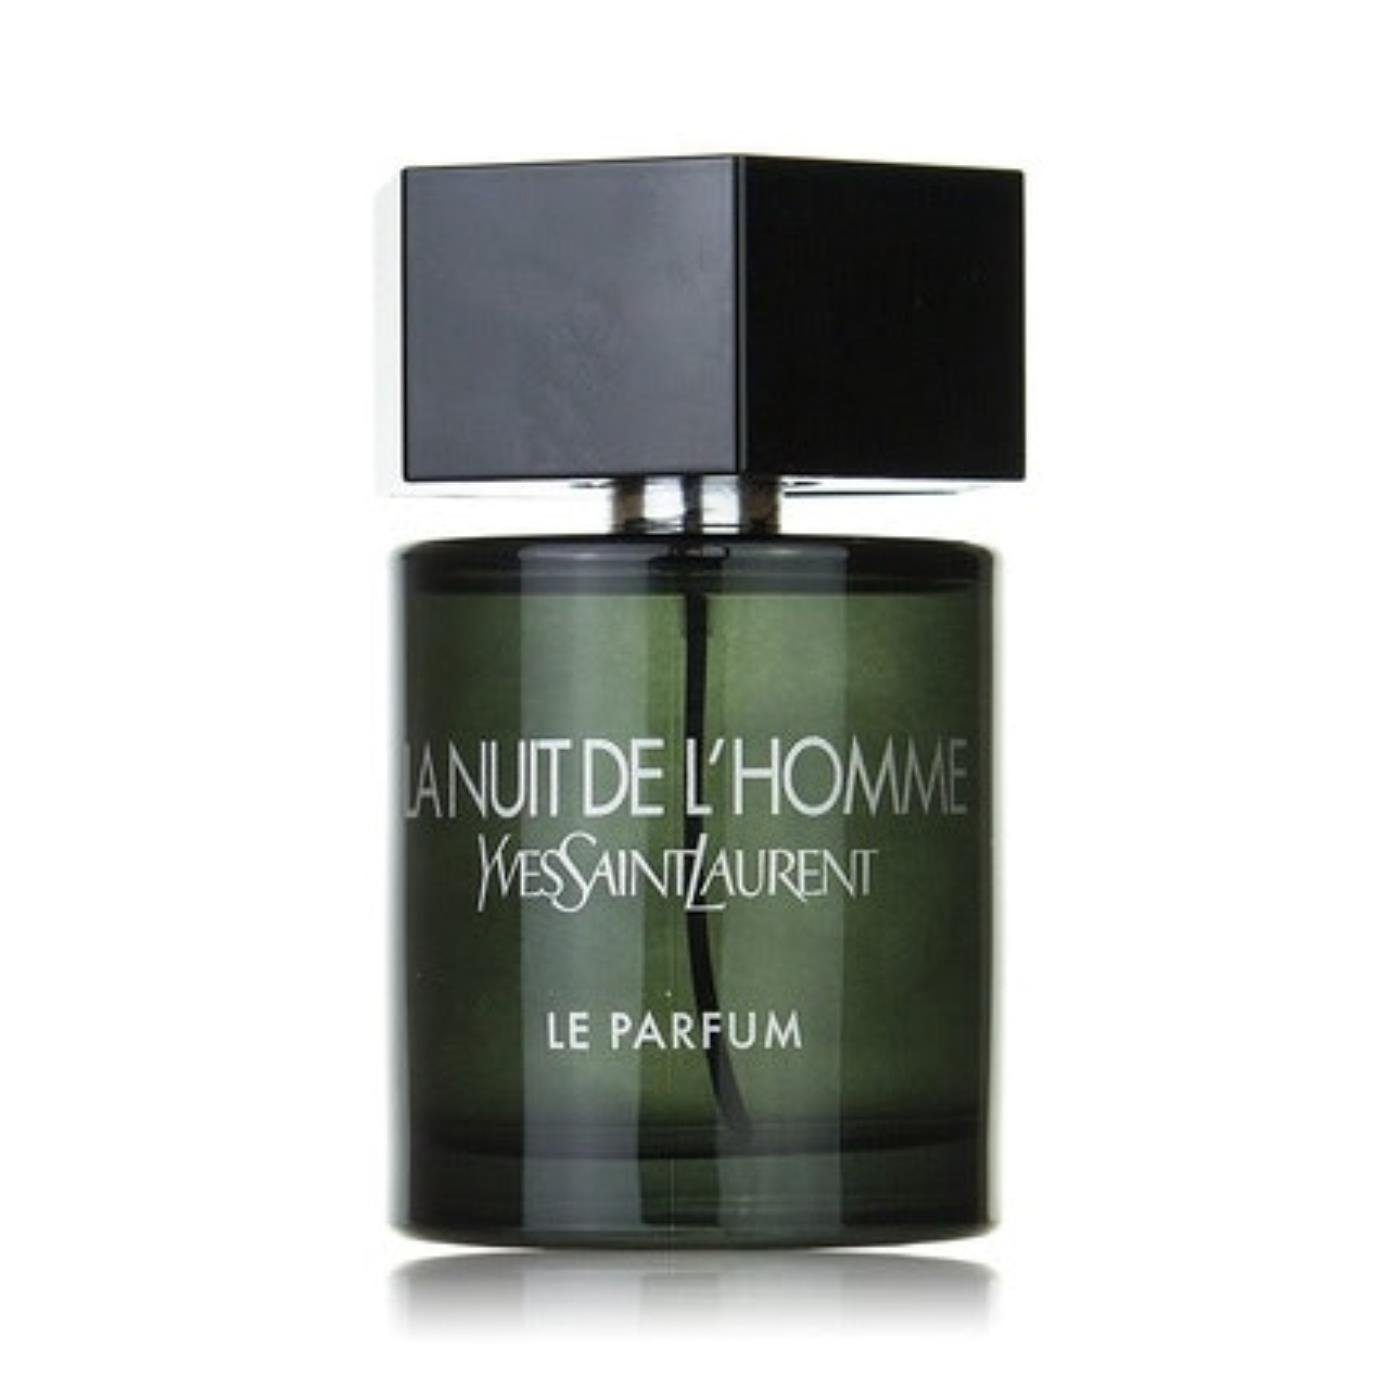 YVES SAINT LAURENT Eau de Parfum Yves Saint Laurent La Nuit de L'Homme Le Parfum